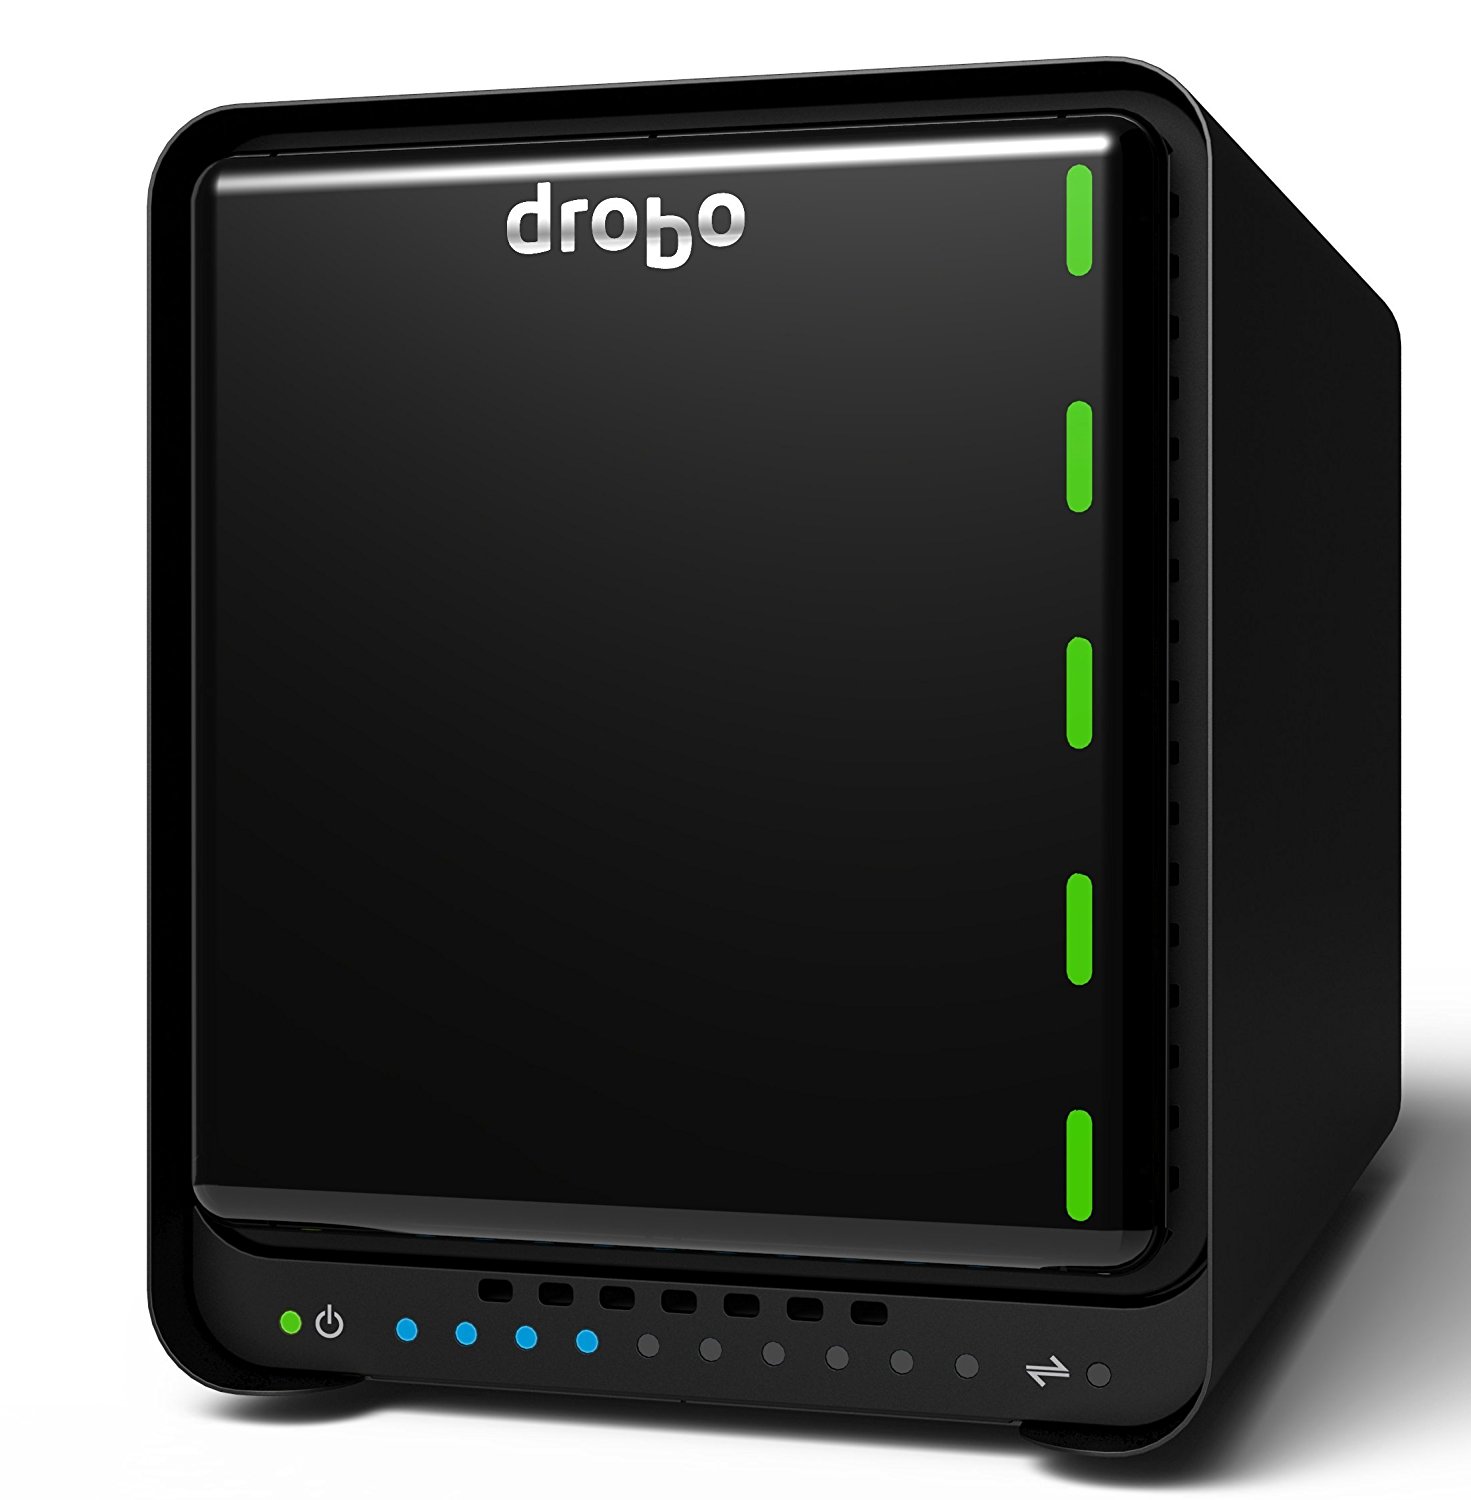 PC- Drobo direct Drobo 5D3 5-Drive Direct Attached Storage (DAS) Array - Deux ports Thunderbolt 3 et USB 3.0 de type C (DRDR6A21)